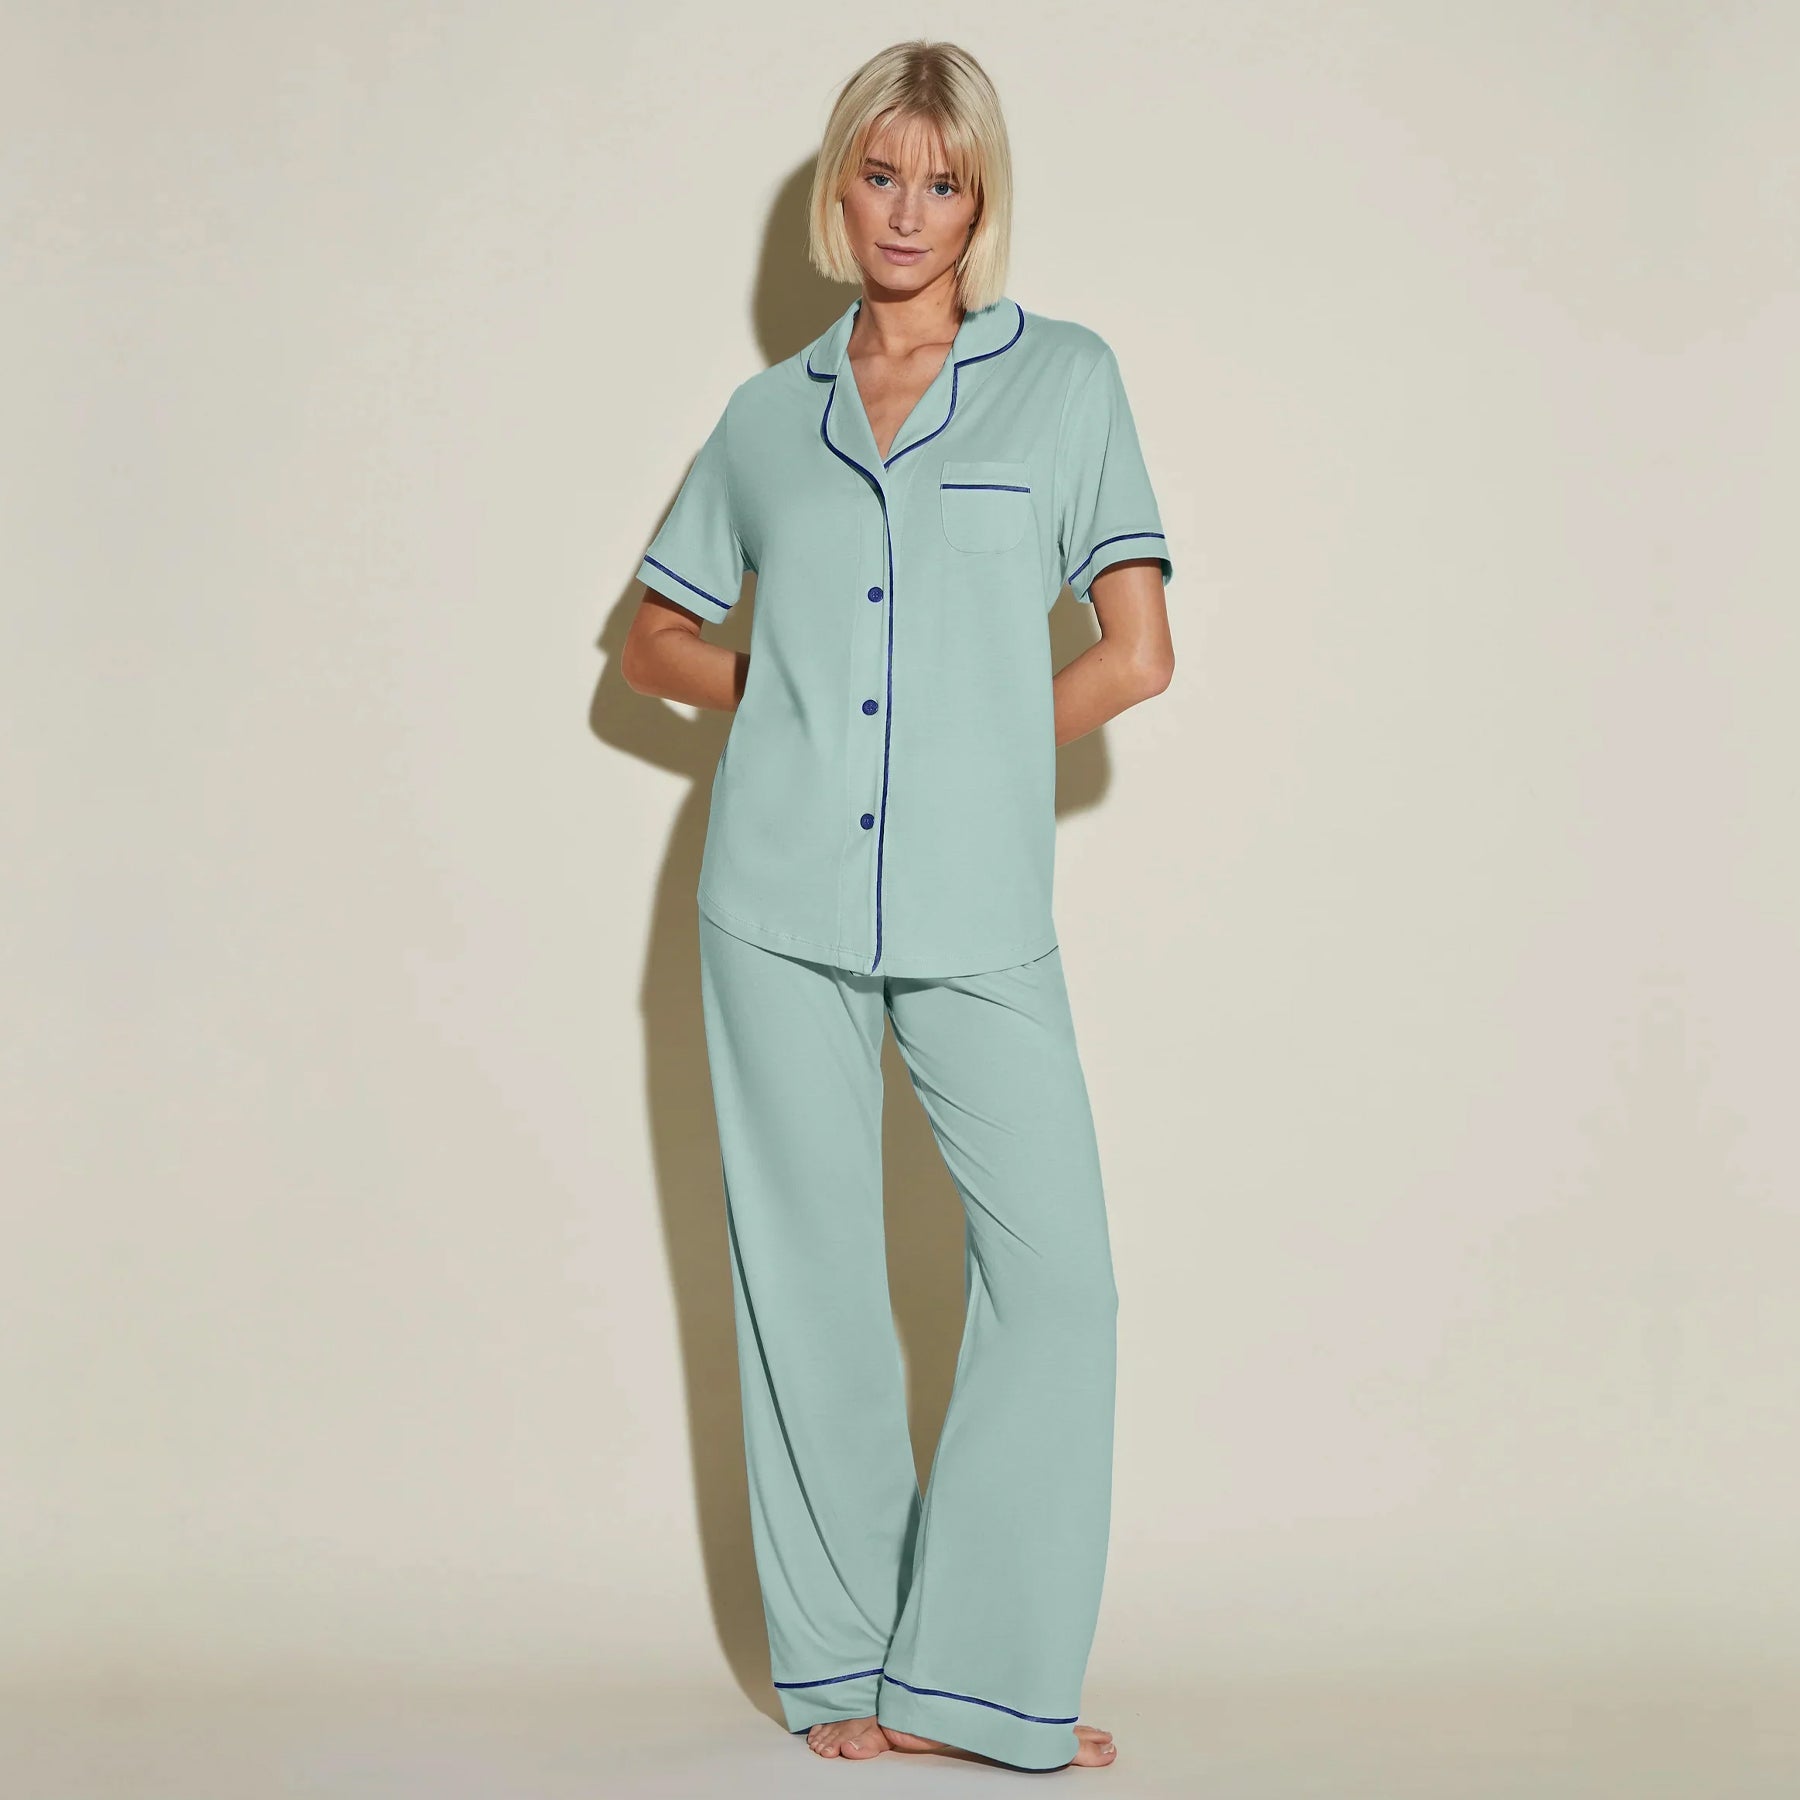 Womens Cotton Pajamas Sets Canada - Pajama Village – Pajama Village Canada